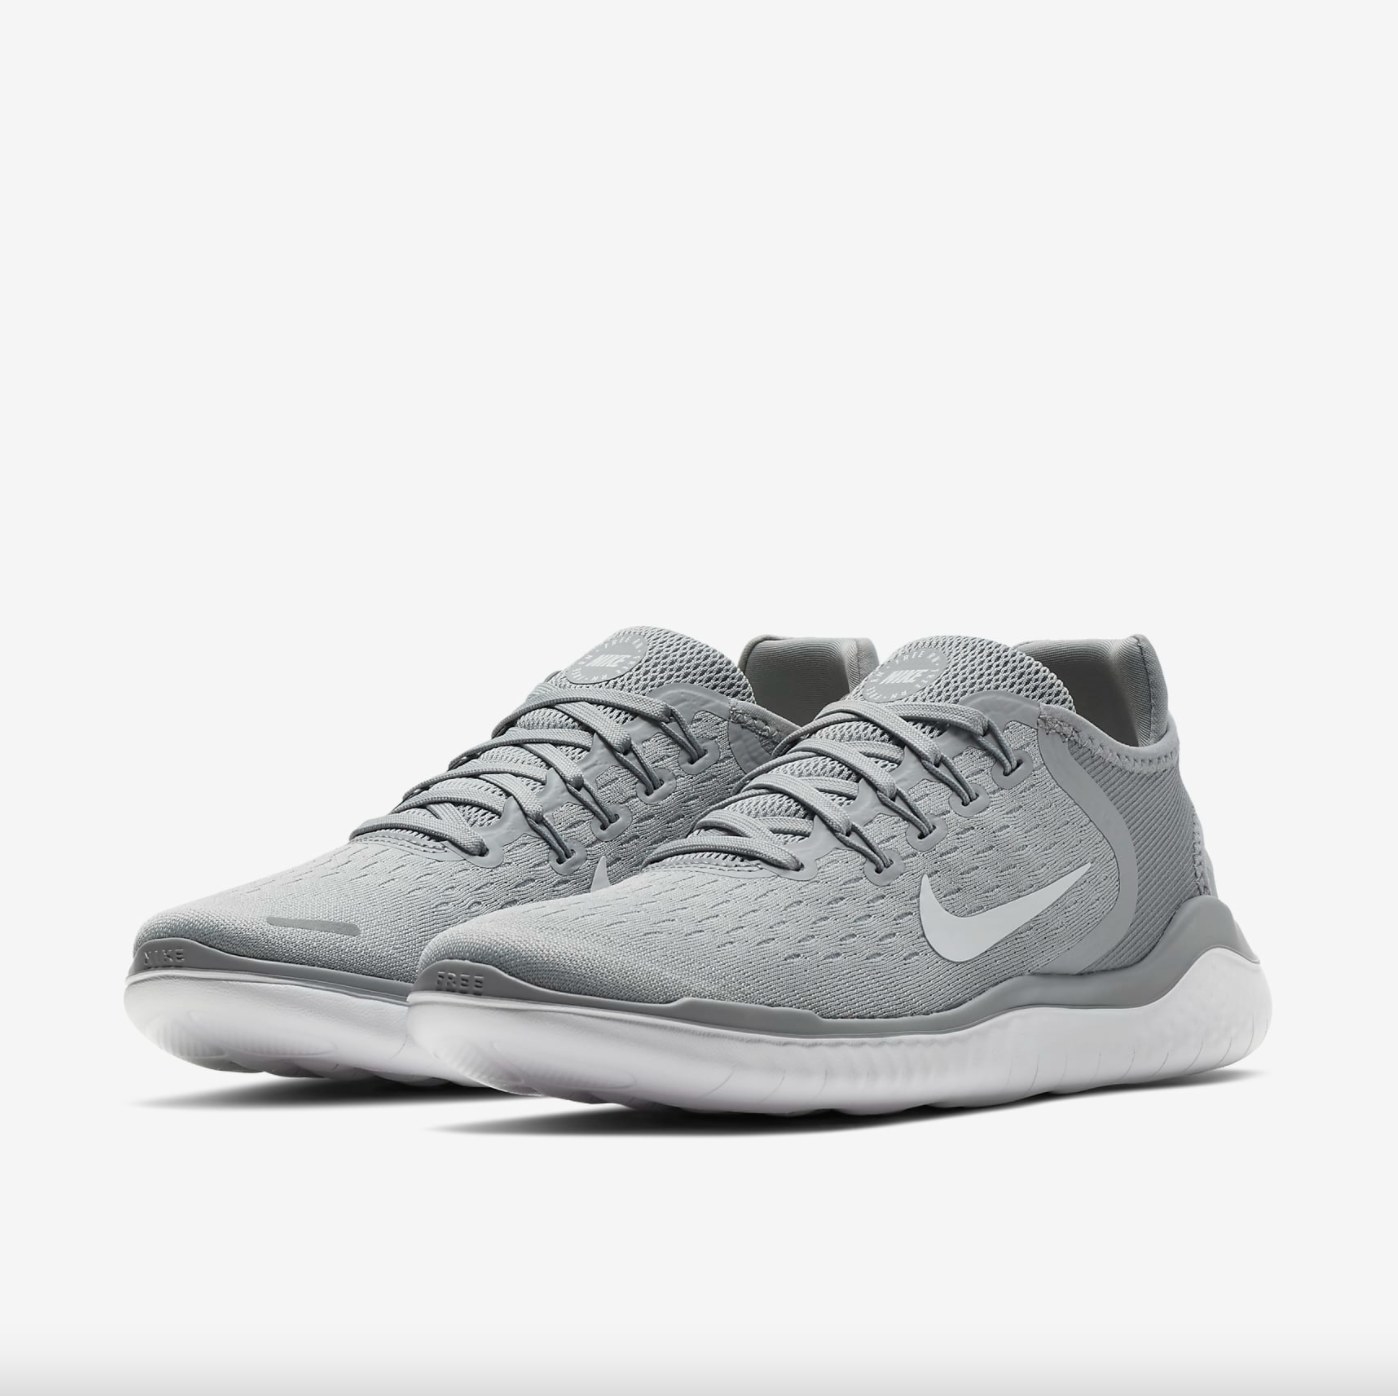 The gray Nike running shoe